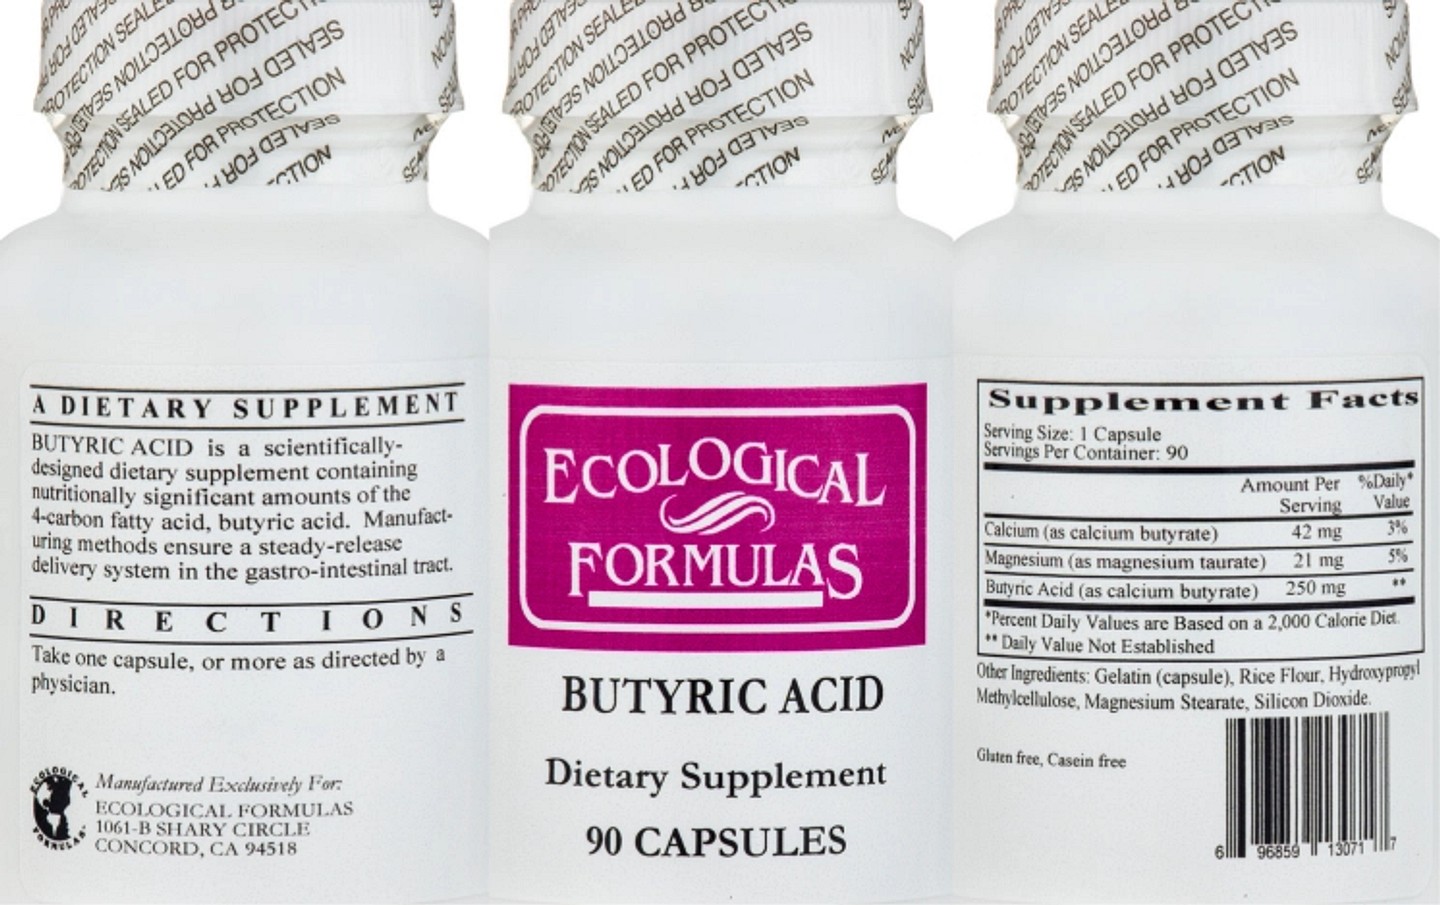 Ecological Formulas, Butyric Acid label